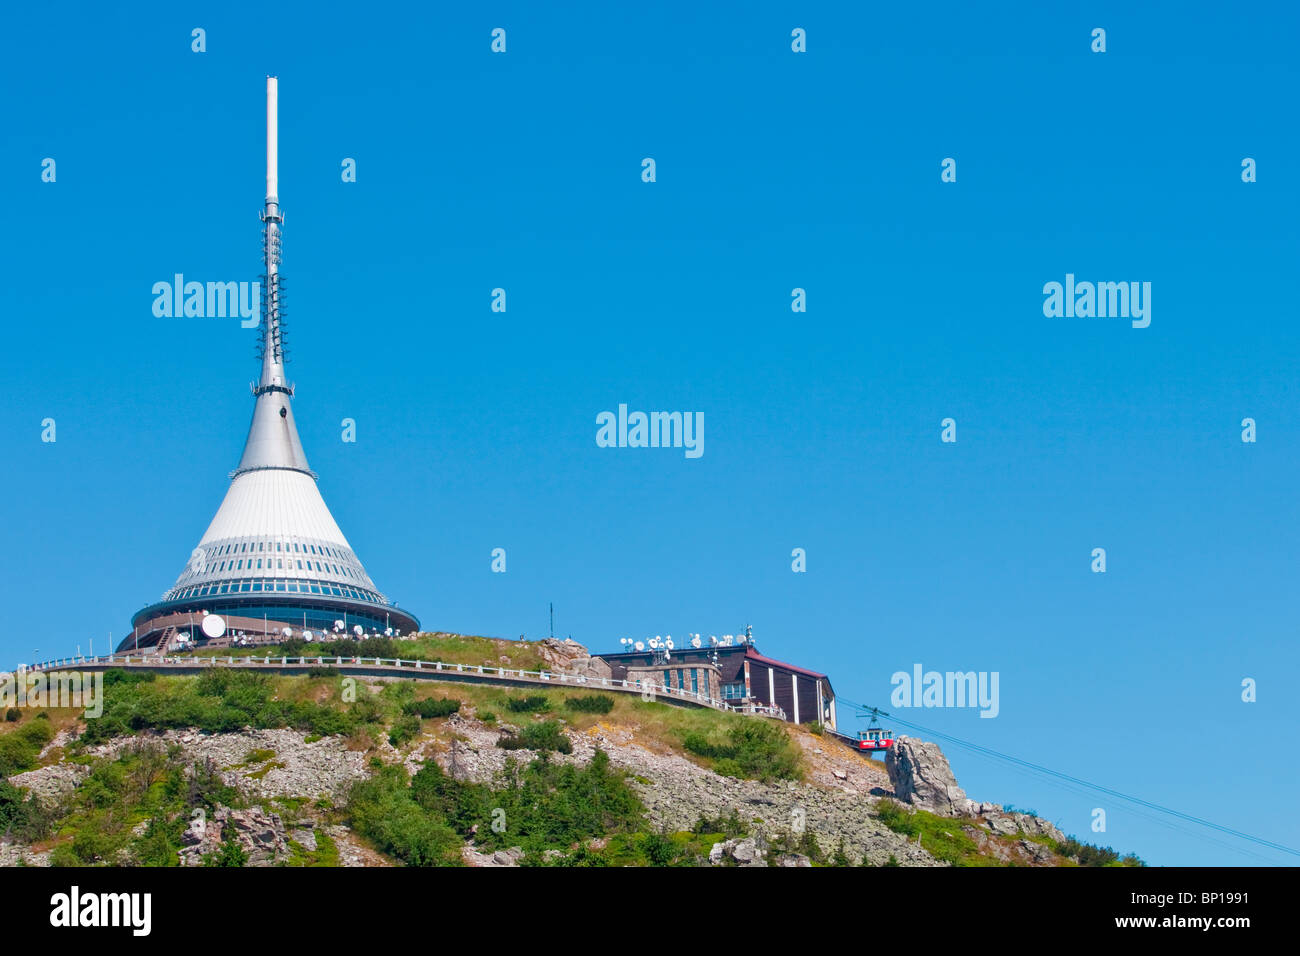 République Tchèque, Liberec - 1012 mètres de haut, la tour de télévision et d'hôtel - architecte hubacek Banque D'Images